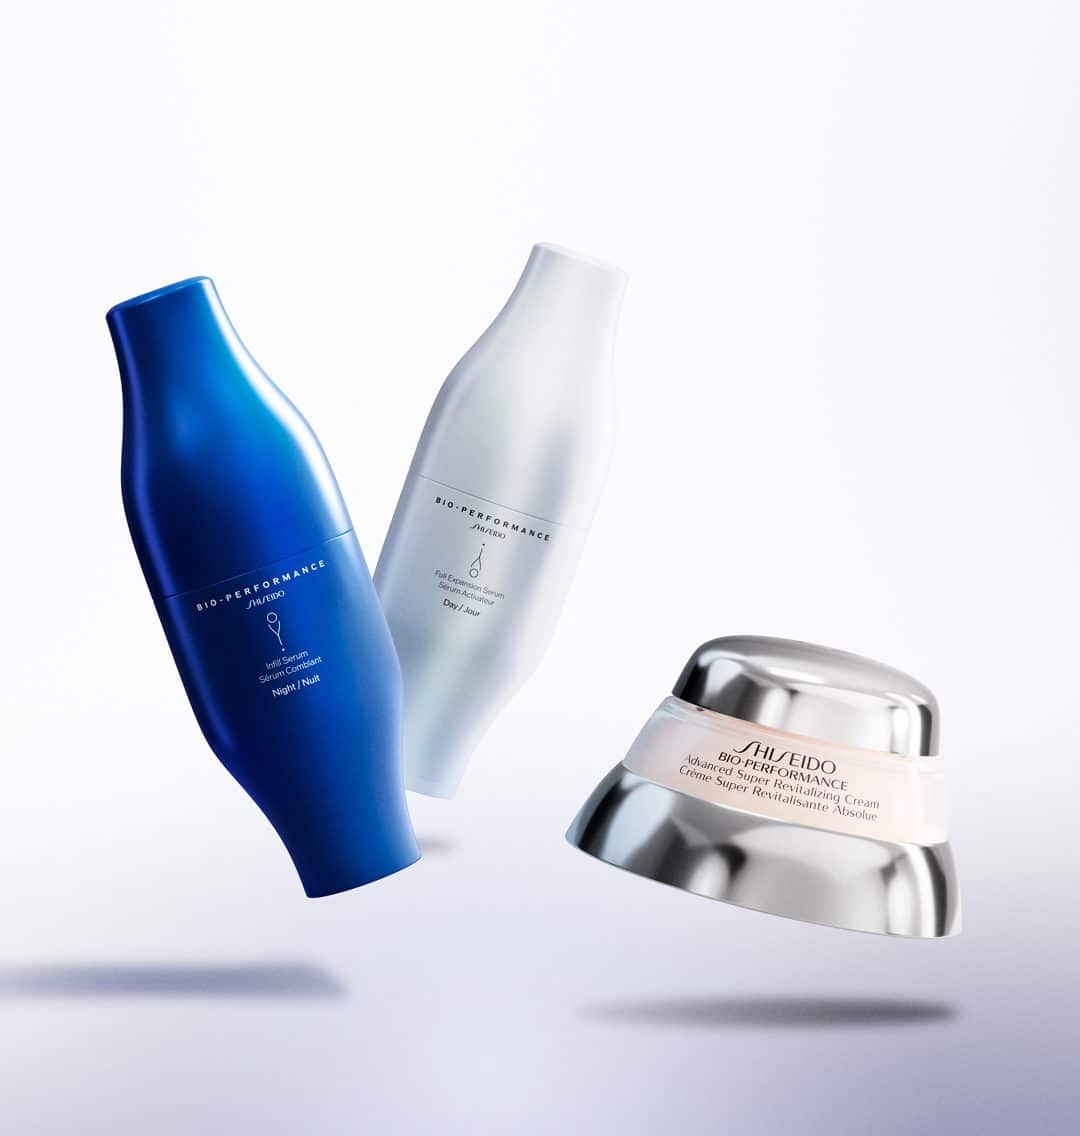 Η Shiseido αποκαλύπτει τo Βio-Perfomance Skin Filler, τη νέα πρωτοποριακή περιποίηση της επιδερμίδας εμπνευσμένη από την αισθητική ιατρική